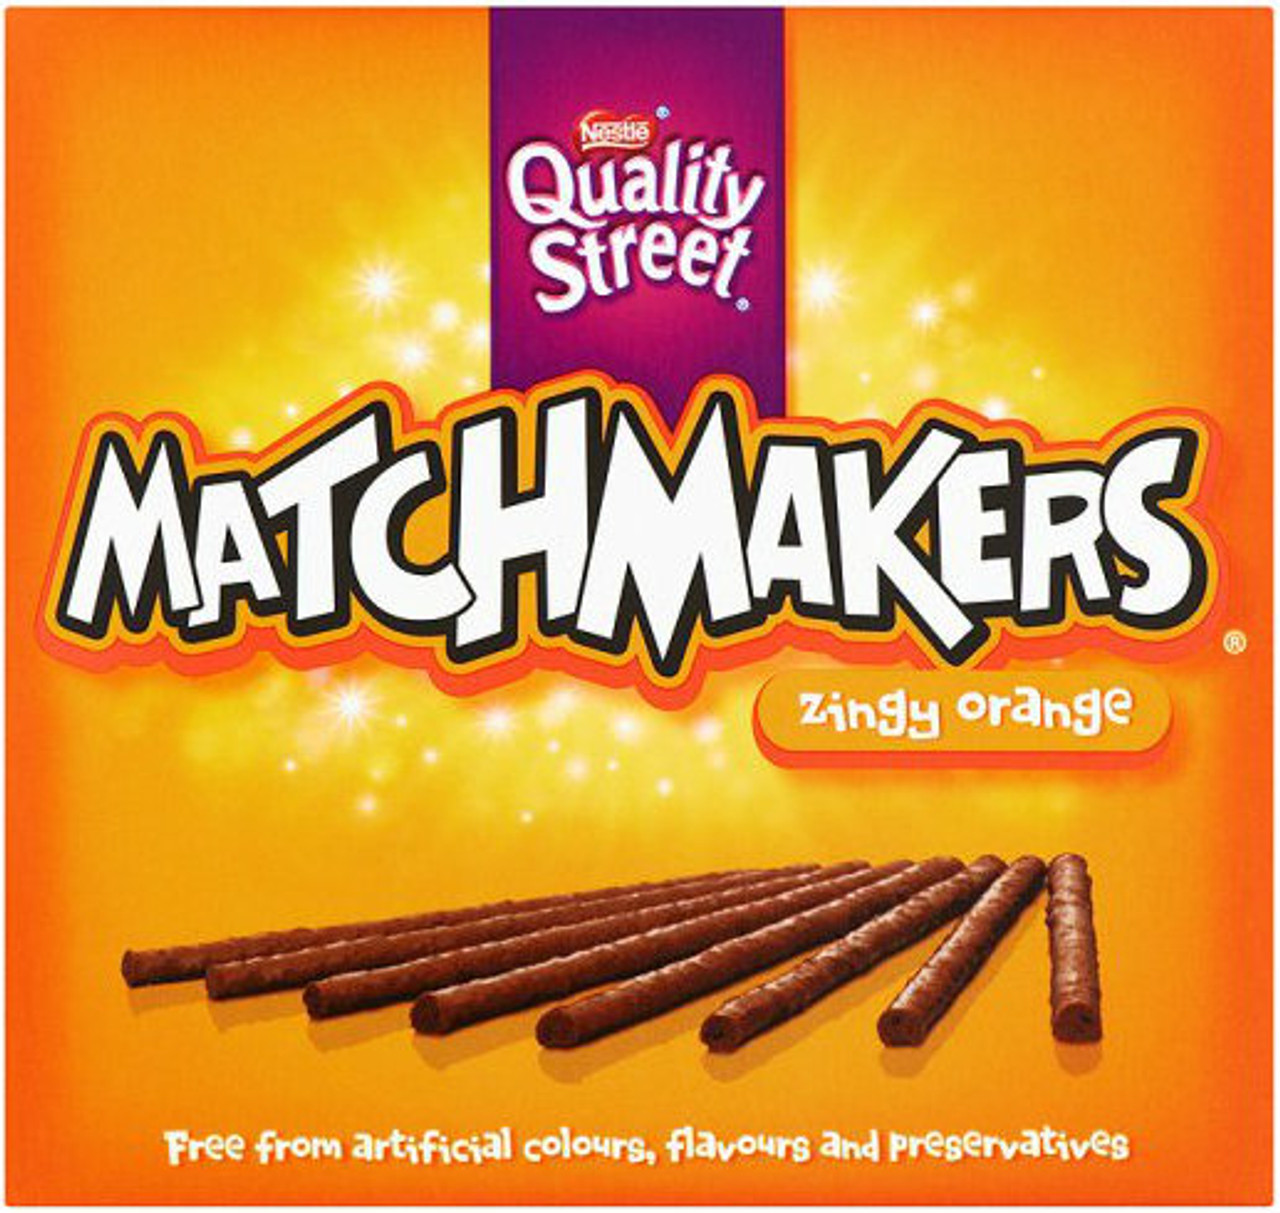 Nestle Matchmakers Zingy Orange 120g